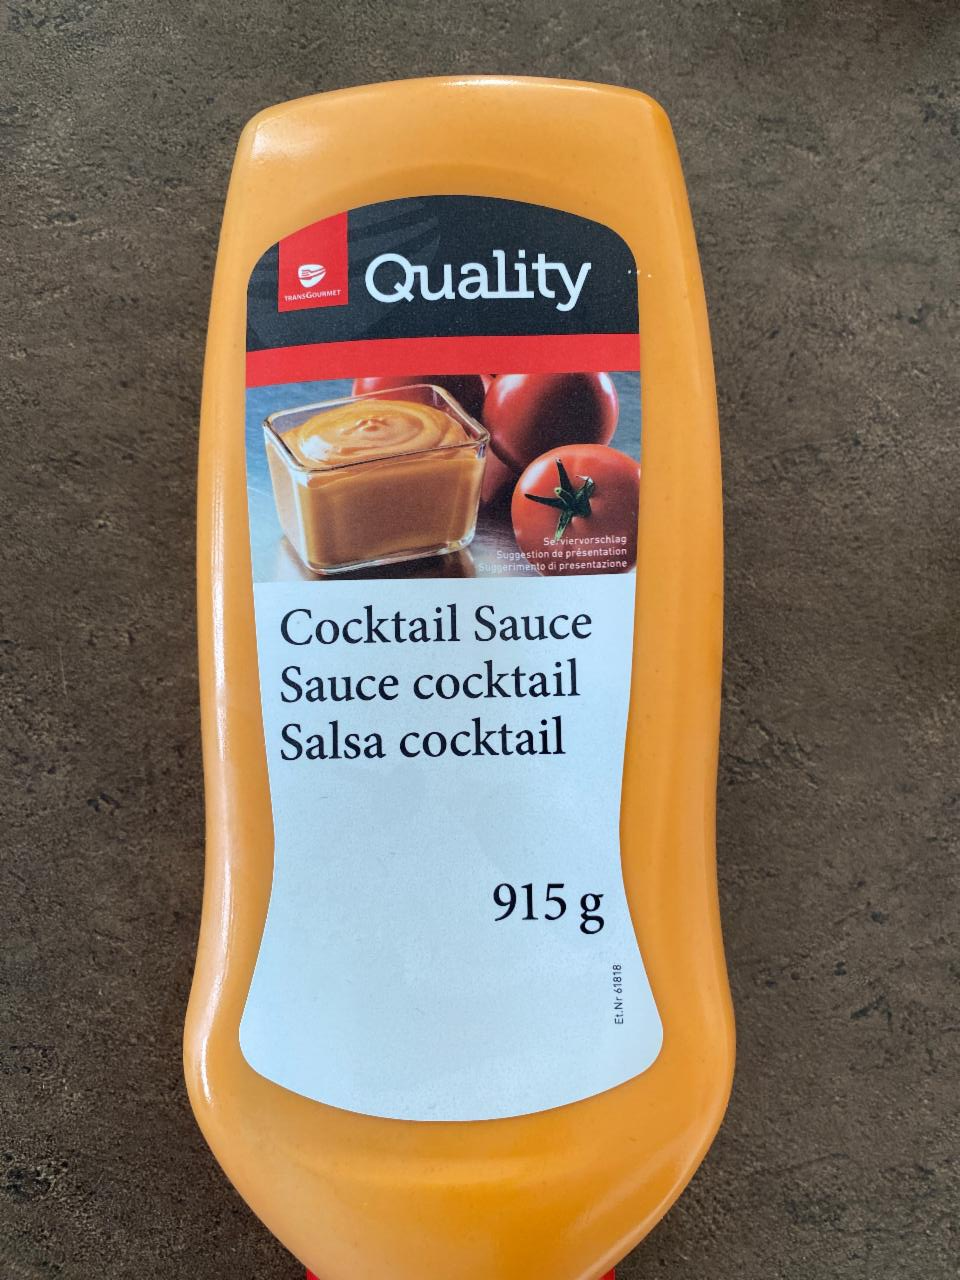 Fotografie - coctail sauce quality